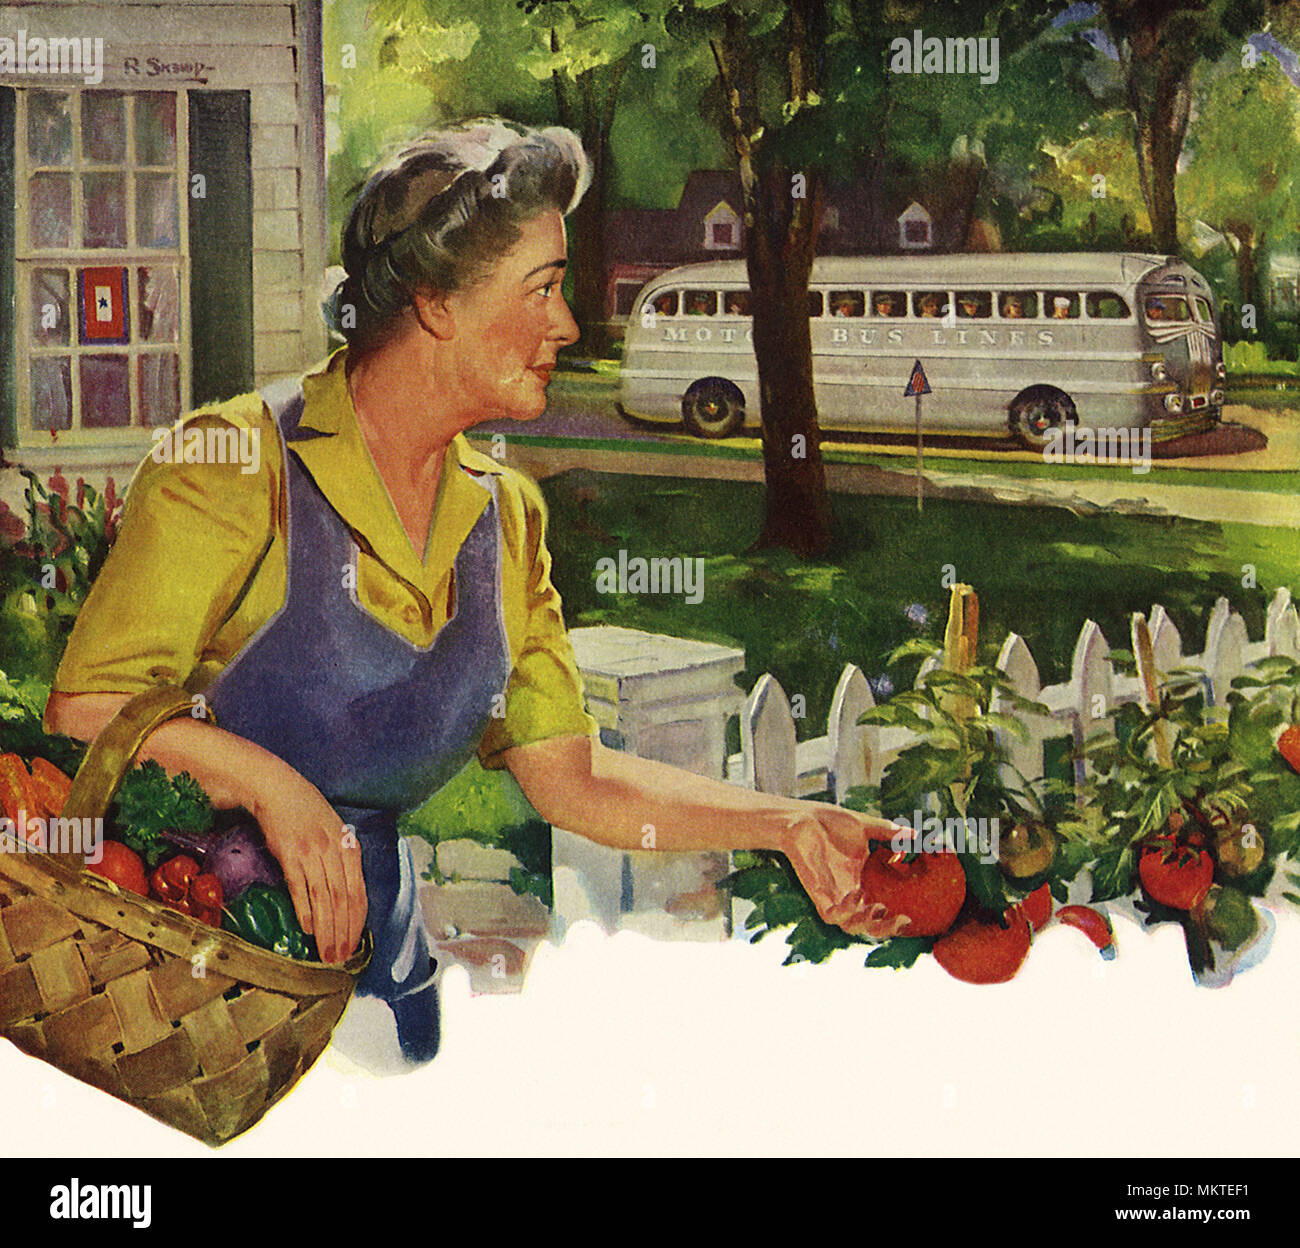 Montres femme recrute sur le bus tout en ramassant des tomates Banque D'Images